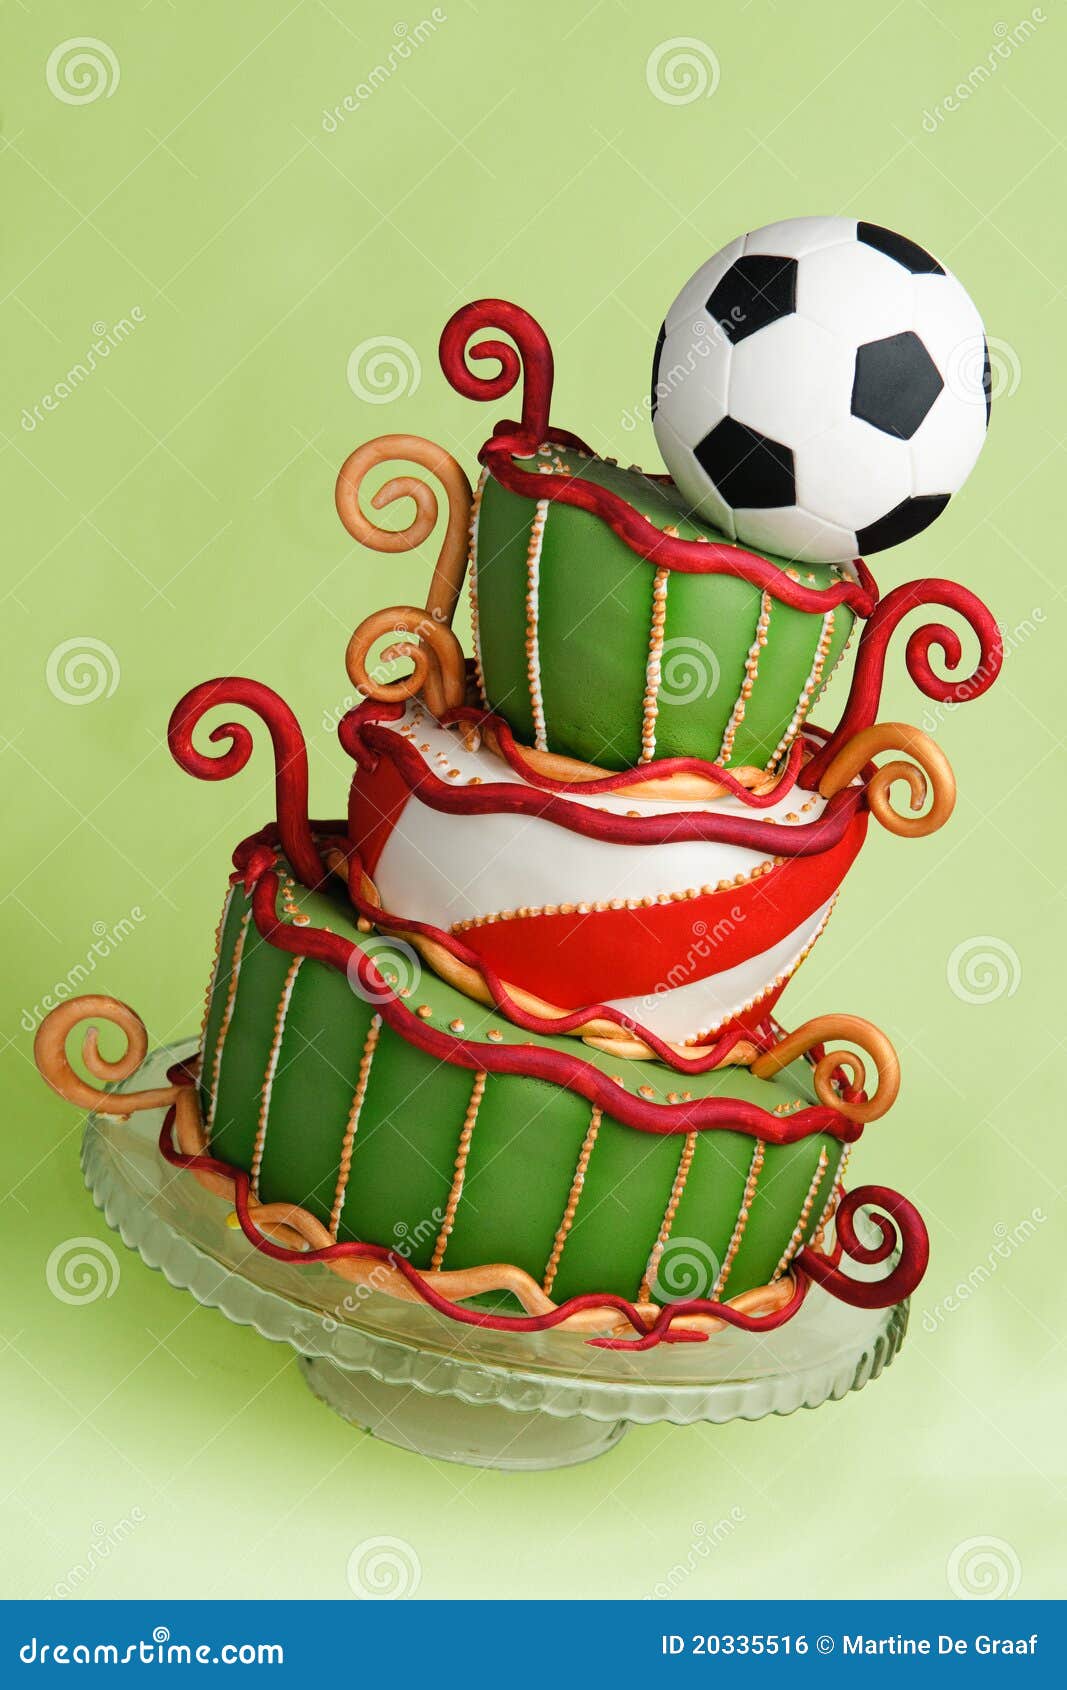 足球蛋糕 库存图片. 图片 包括有 空白, 食物, 点心, 牌照, 装饰, 乳脂状, 蛋糕, 全部, 糖果 - 26282915